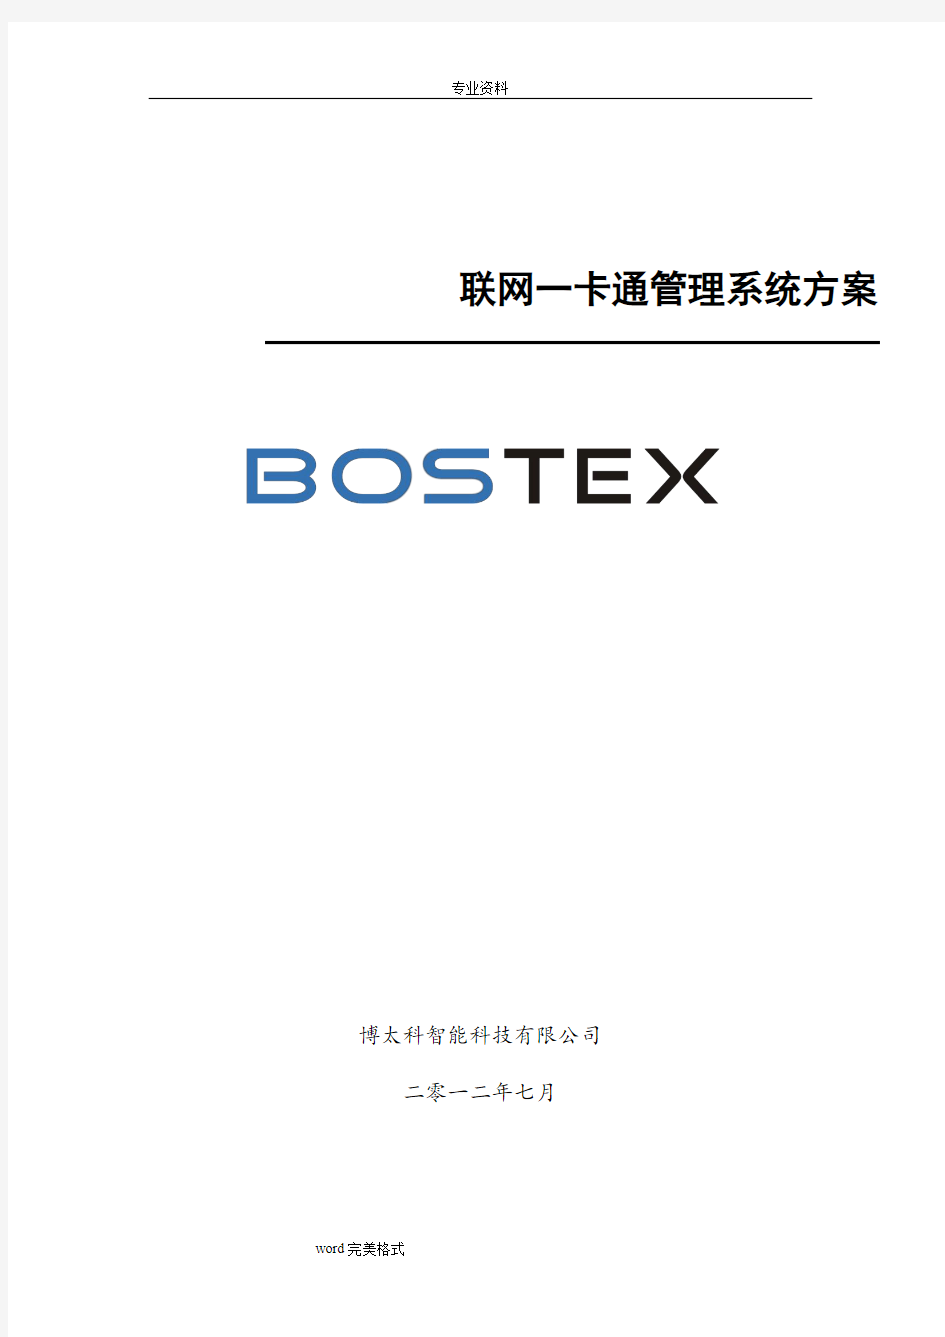 Bostex联网一卡通管理系统方案(门禁+梯控)